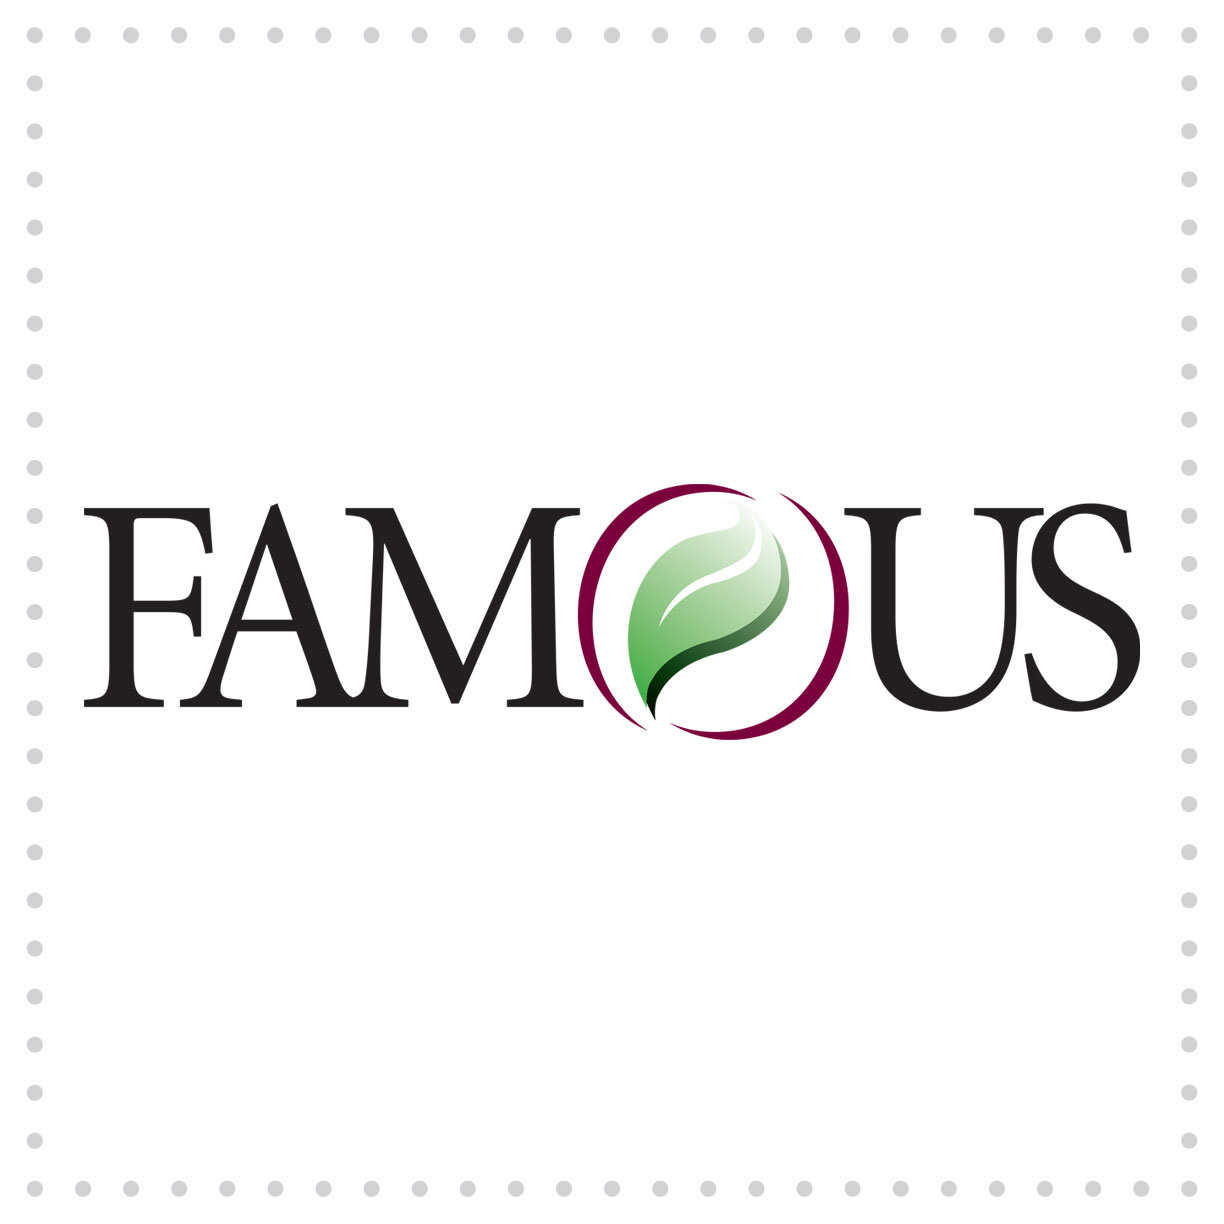 Ball-LogoDesign-FamousSoftware.jpg